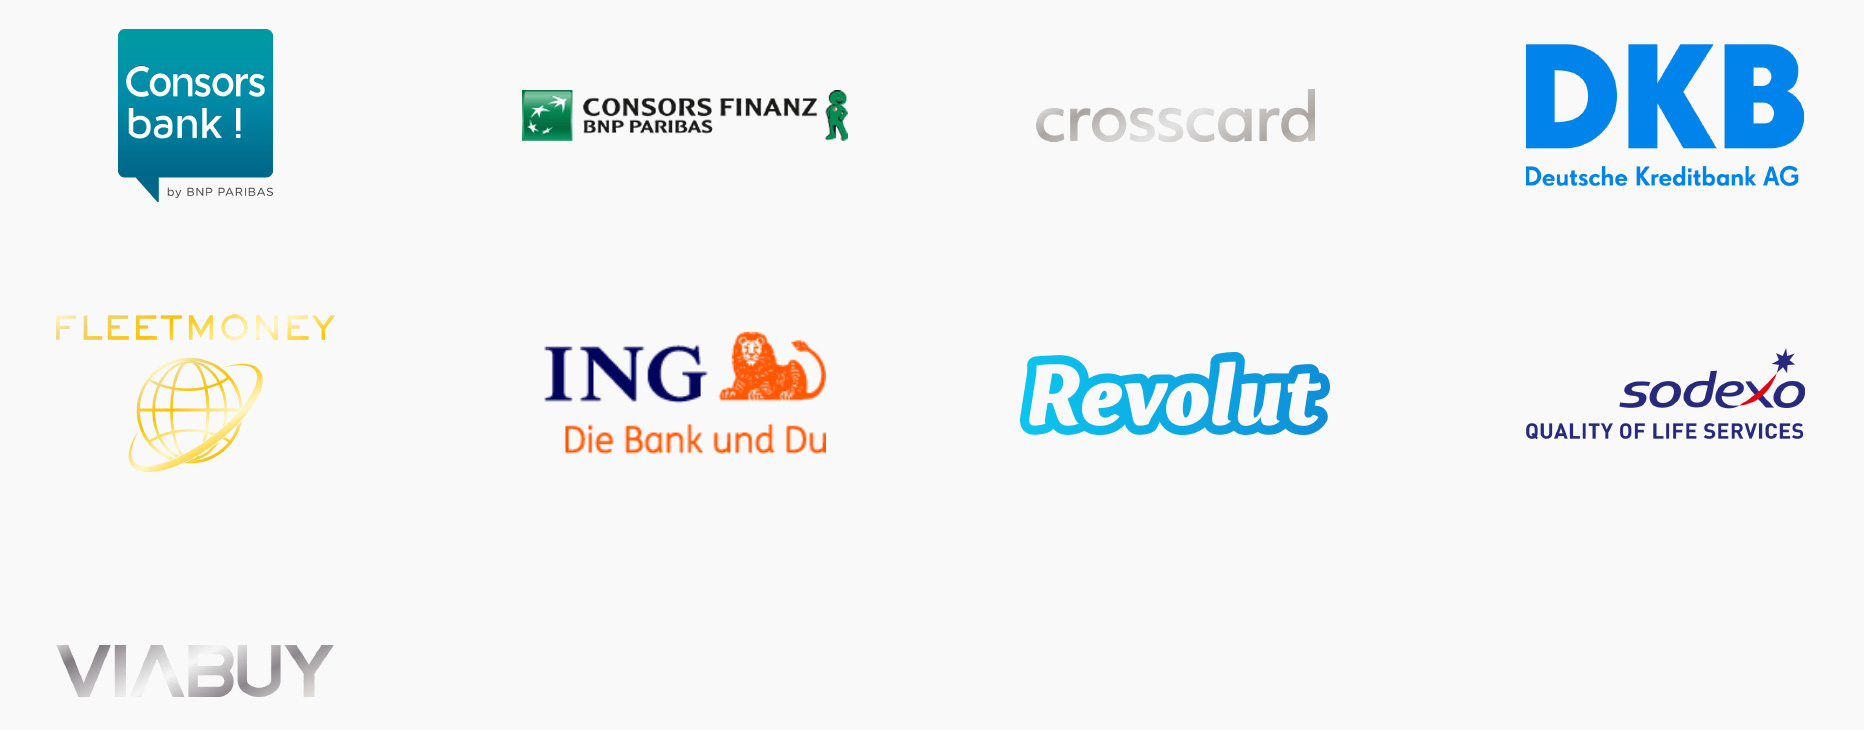 Tarjetas y bancos compatibles con Apple Pay en Alemania para el 2019